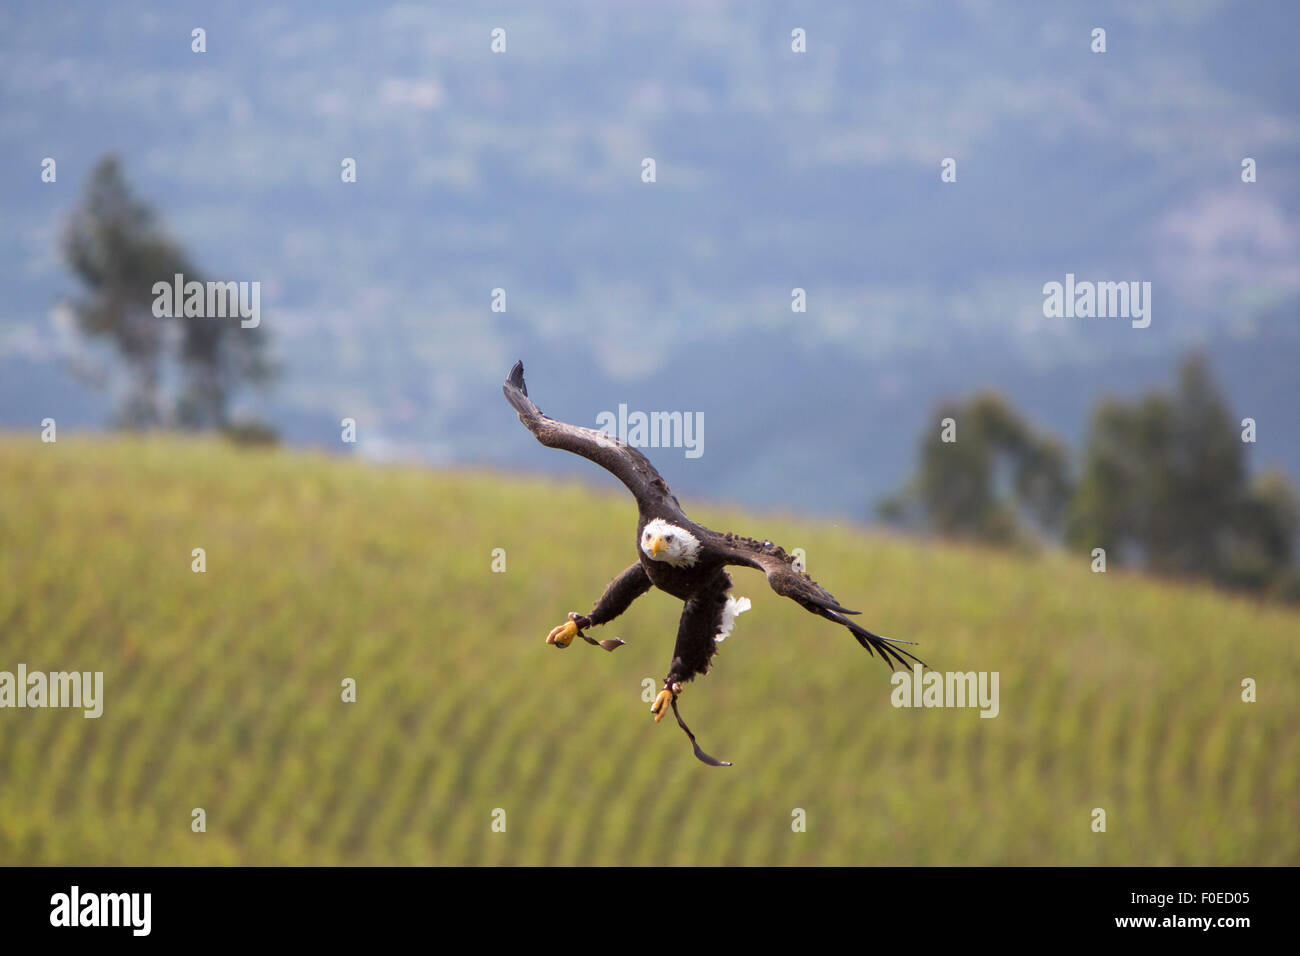 Flying American Bald Eagle landing sur le gant de son entraîneur à un sanctuaire d'oiseaux en plein air près d'Otavalo, Équateur 2015. Banque D'Images